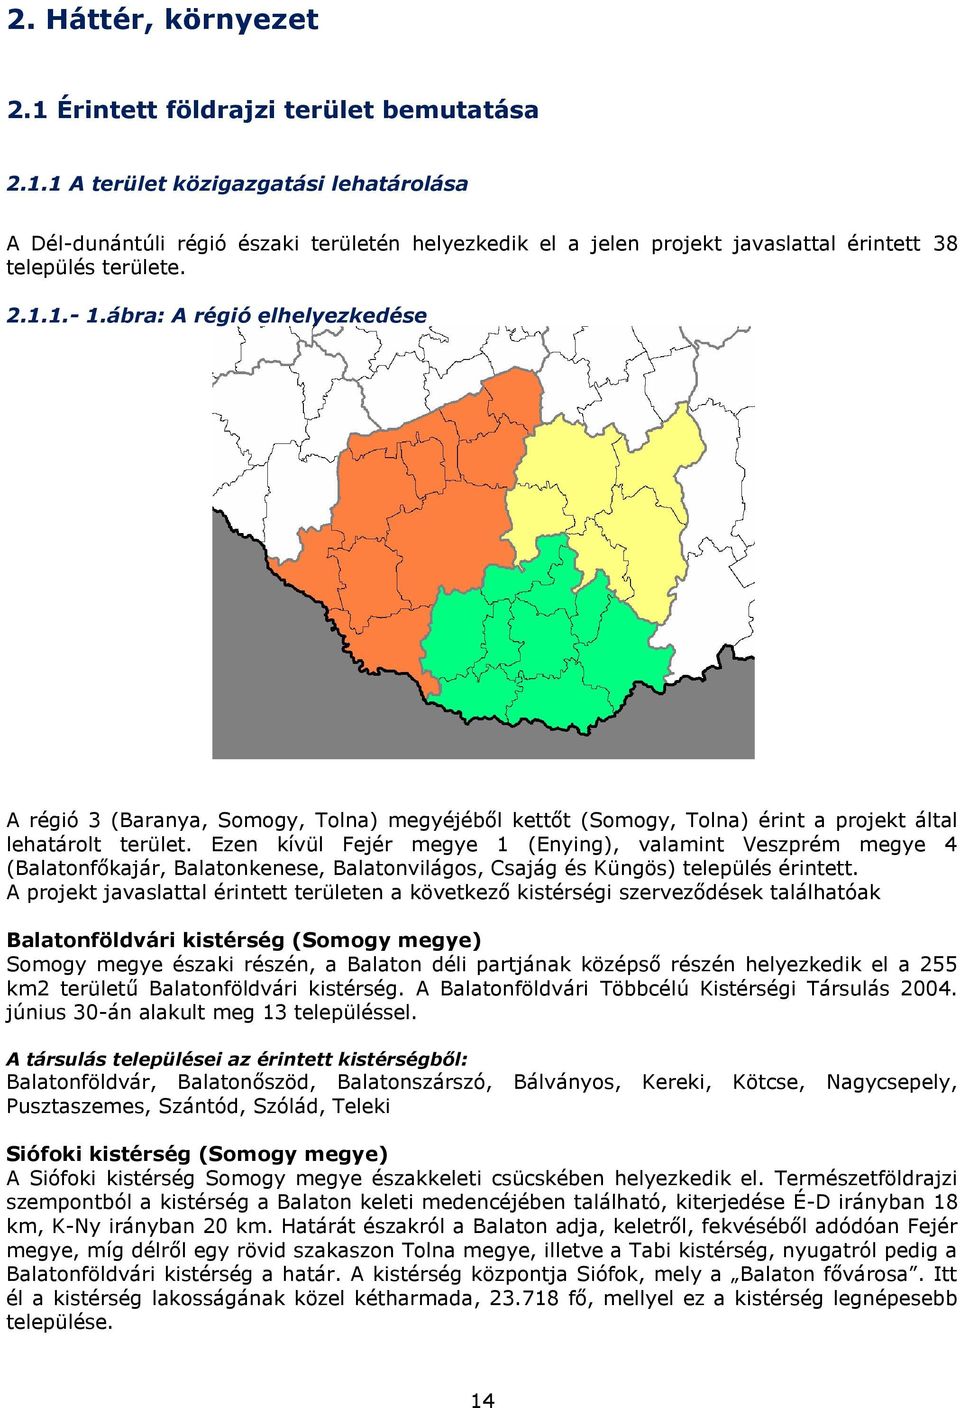 Ezen kívül Fejér megye 1 (Enying), valamint Veszprém megye 4 (Balatonfőkajár, Balatonkenese, Balatonvilágos, Csajág és Küngös) település érintett.